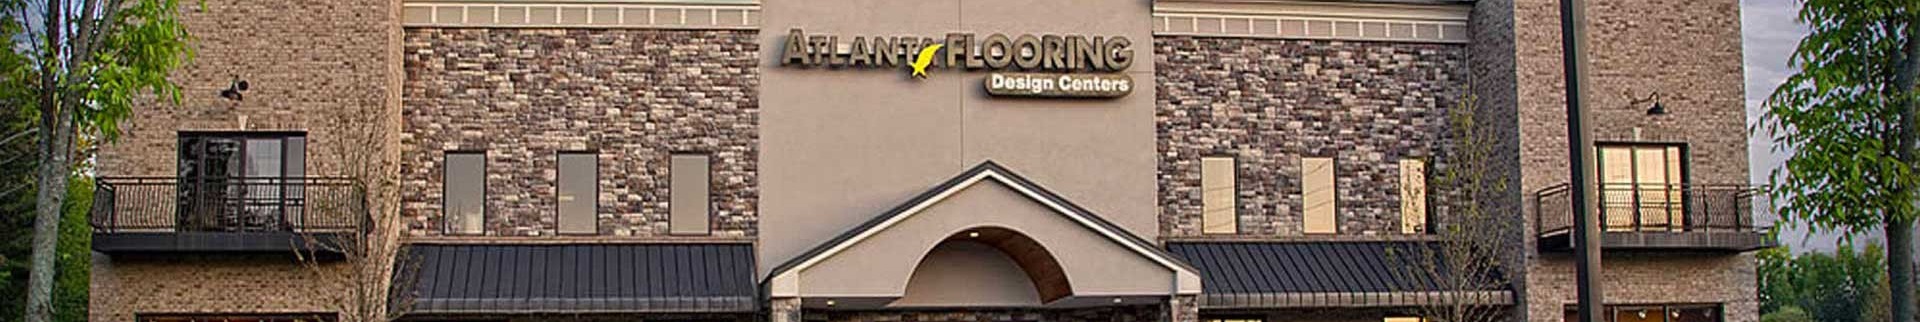 Atlanta Flooring Design Centers background